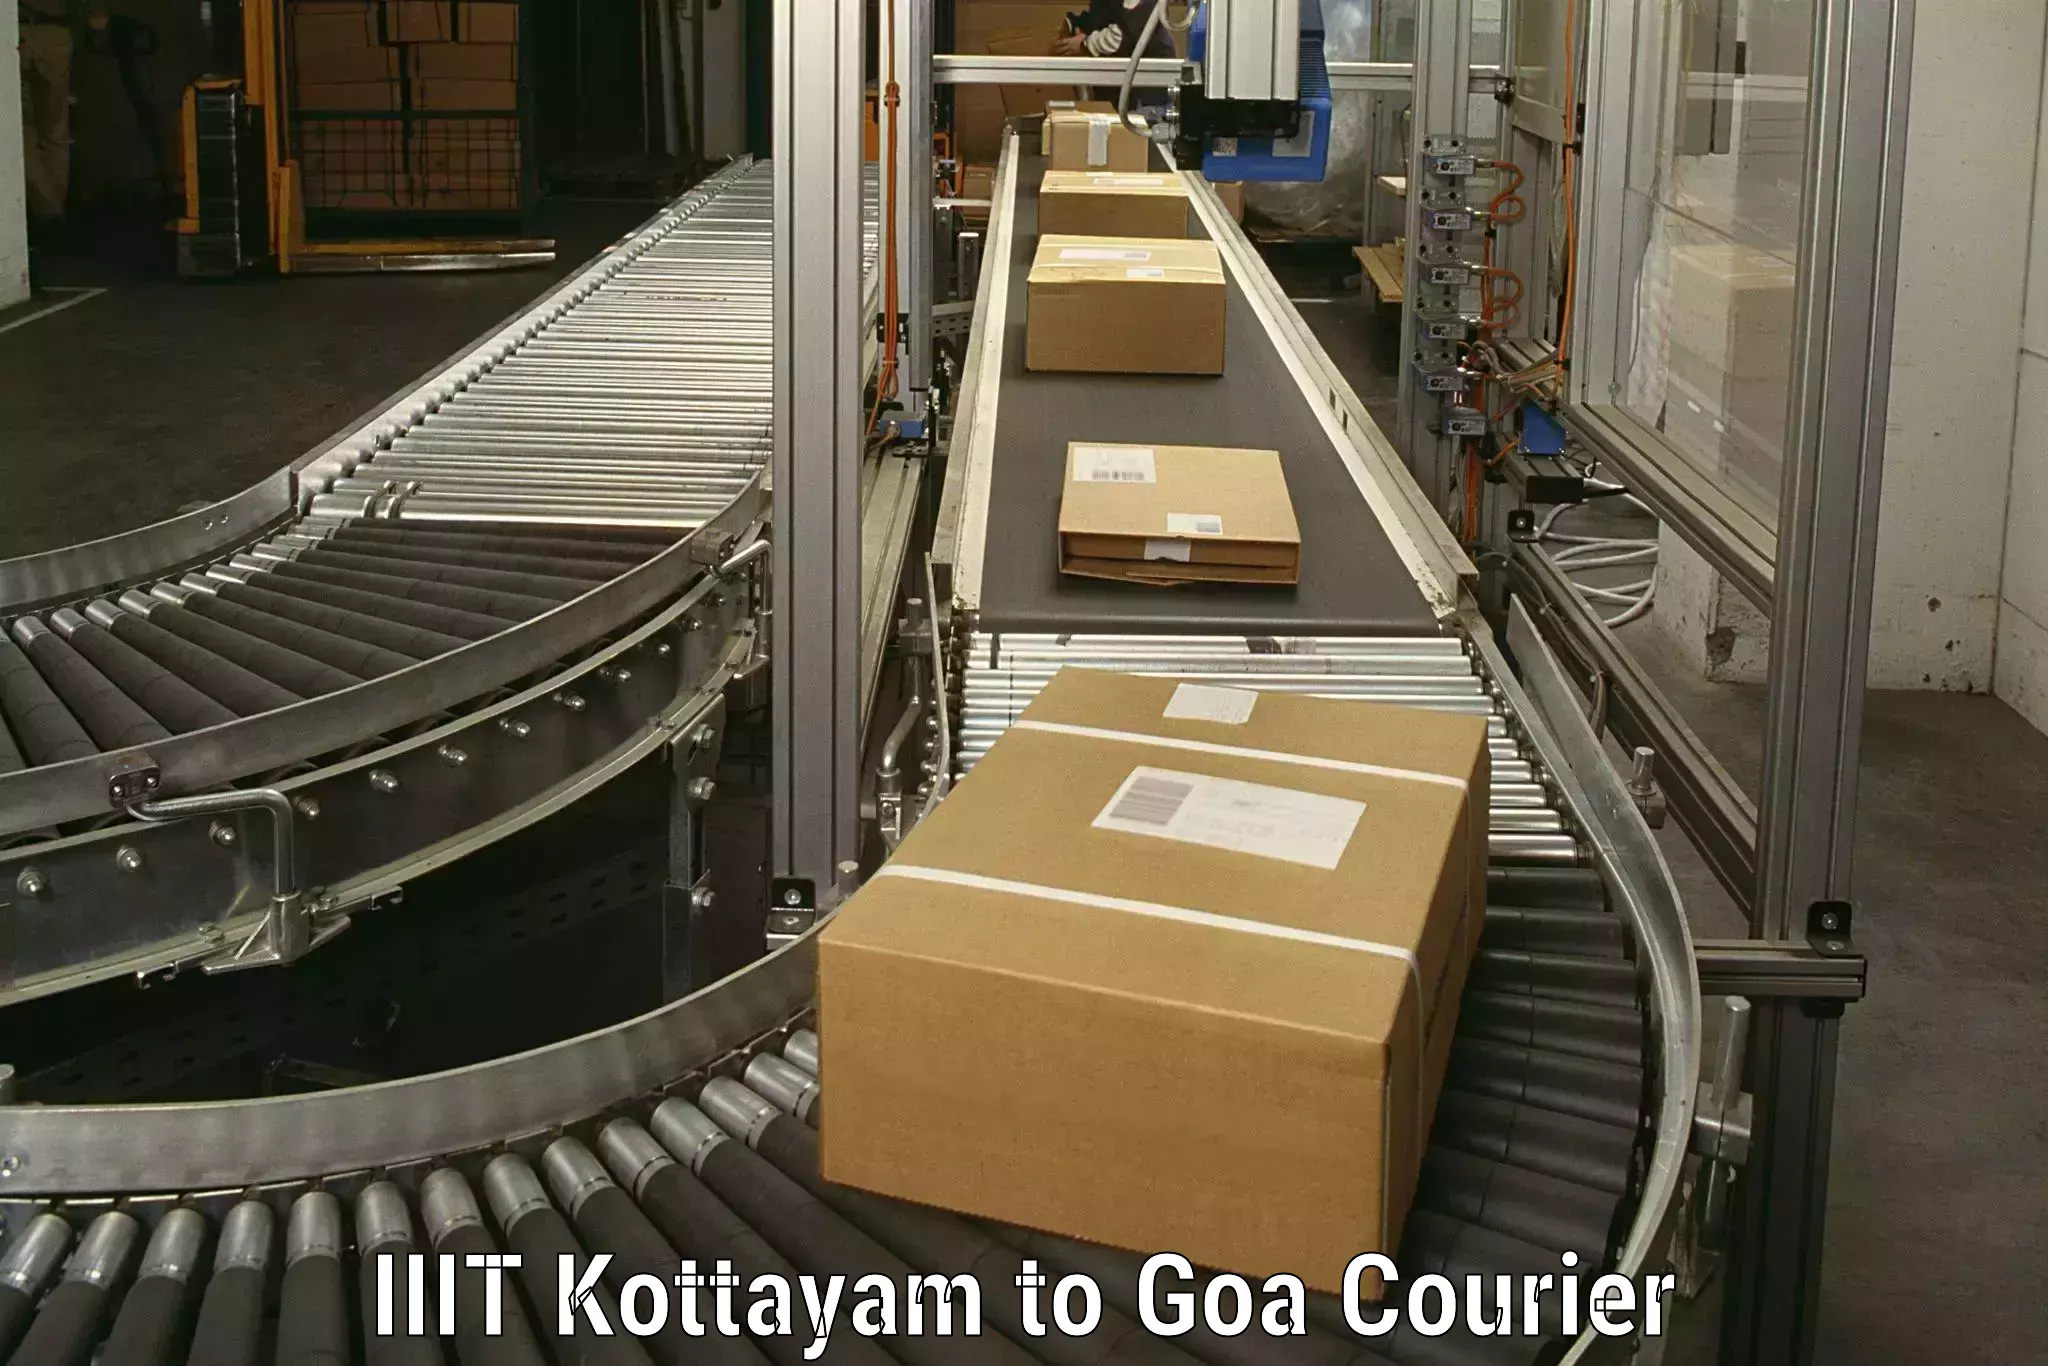 Specialized household transport IIIT Kottayam to IIT Goa